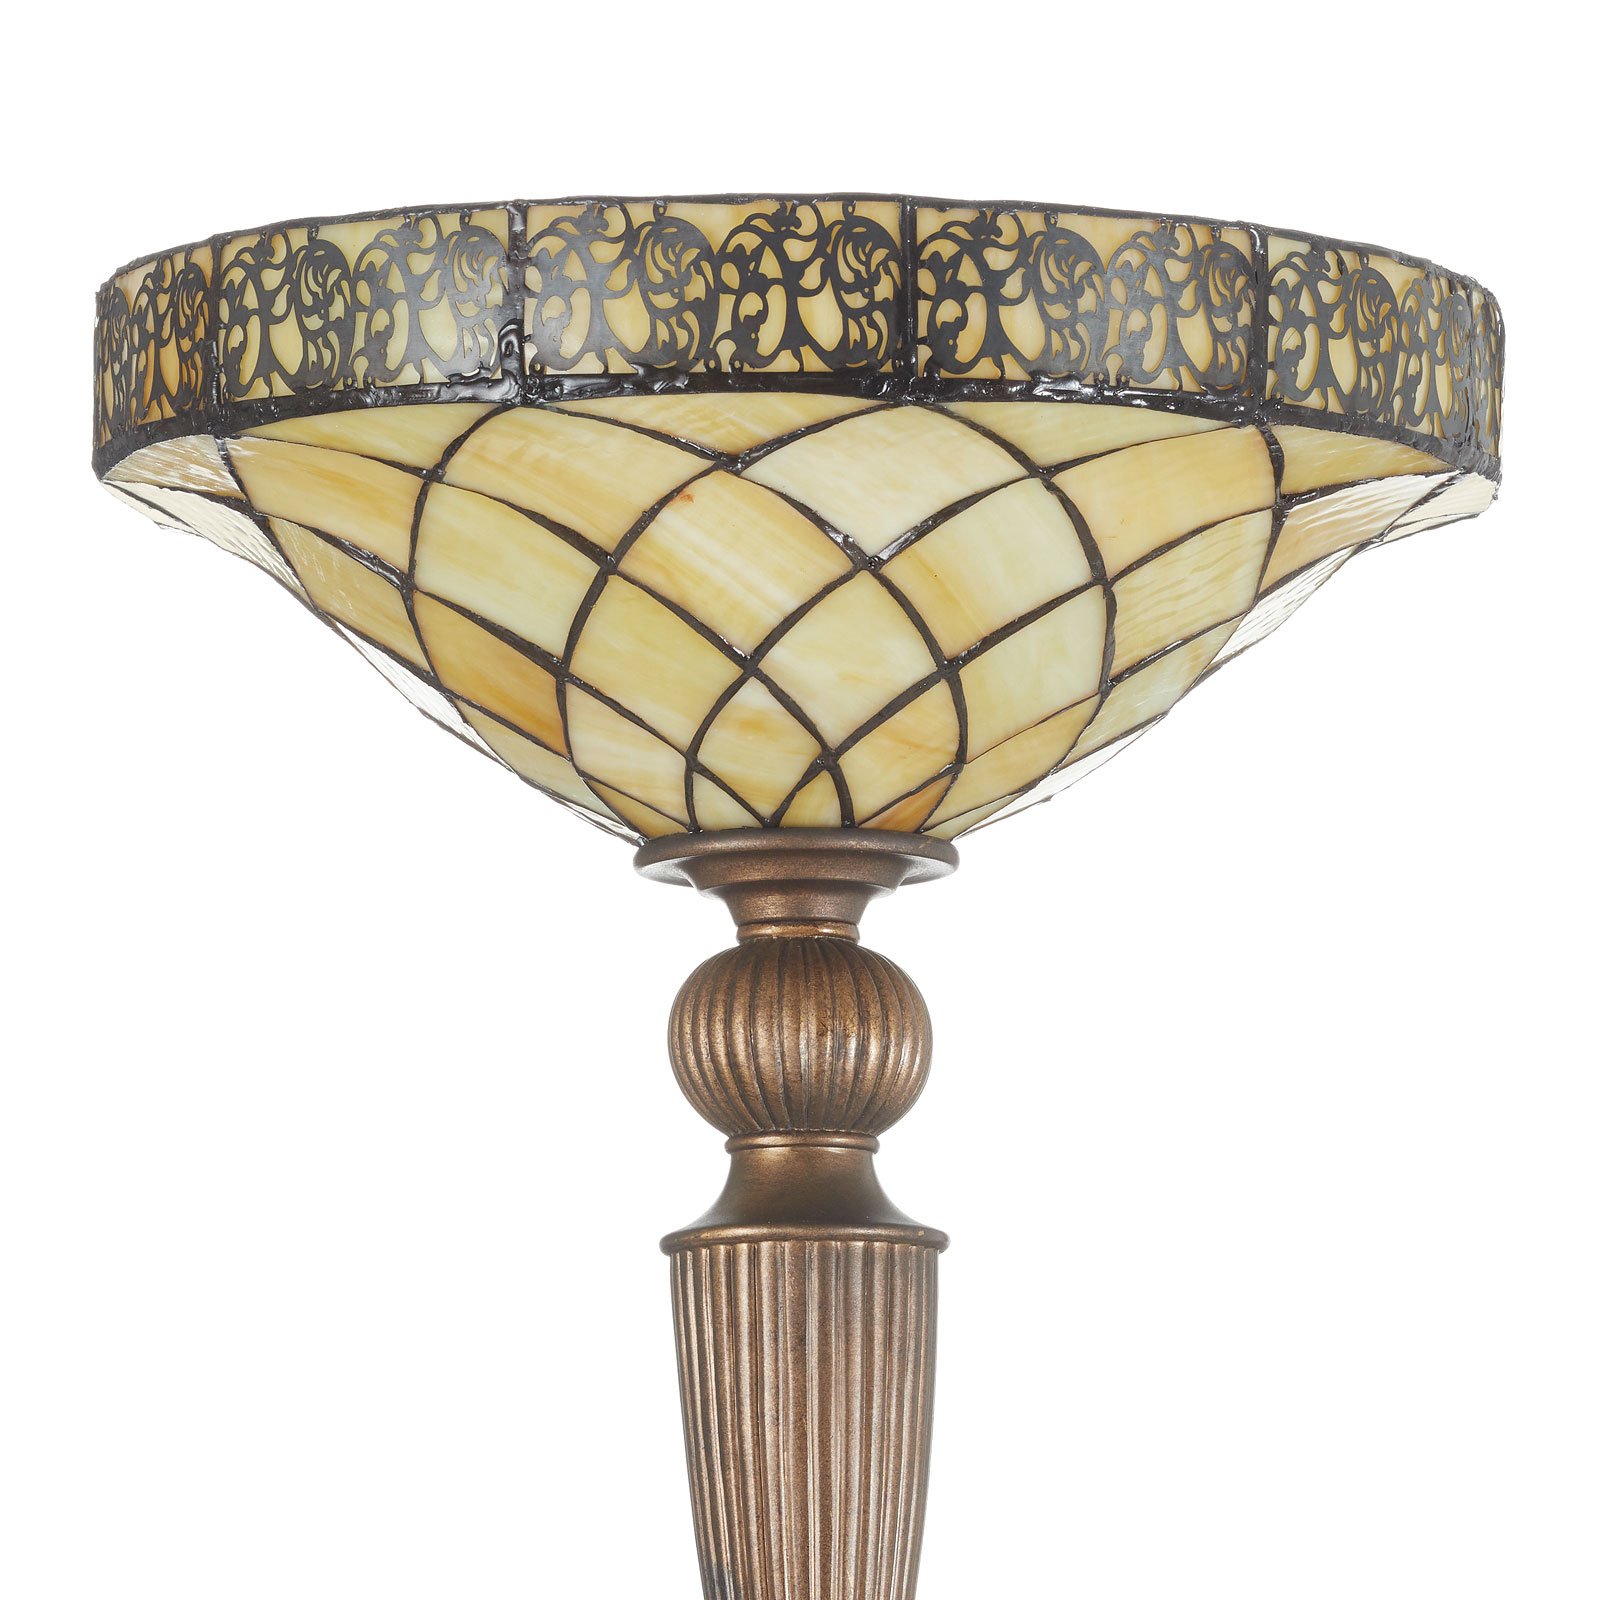 Diamond Tiffany-style uplighter floor lamp